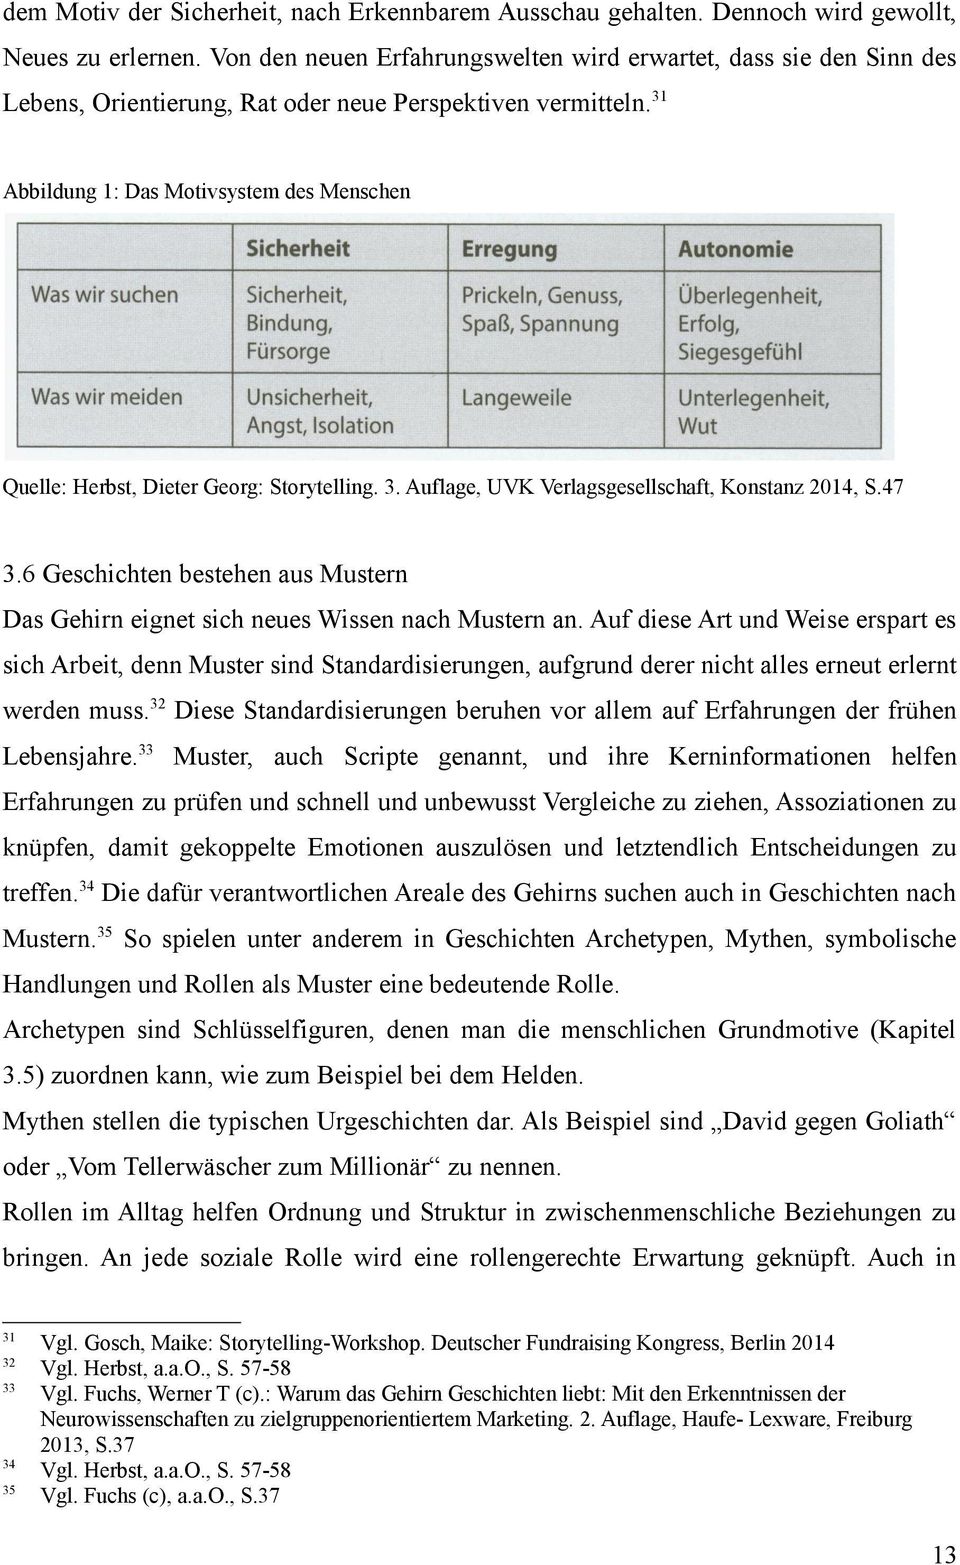 31 Abbildung 1: Das Motivsystem des Menschen Quelle: Herbst, Dieter Georg: Storytelling. 3. Auflage, UVK Verlagsgesellschaft, Konstanz 2014, S.47 3.